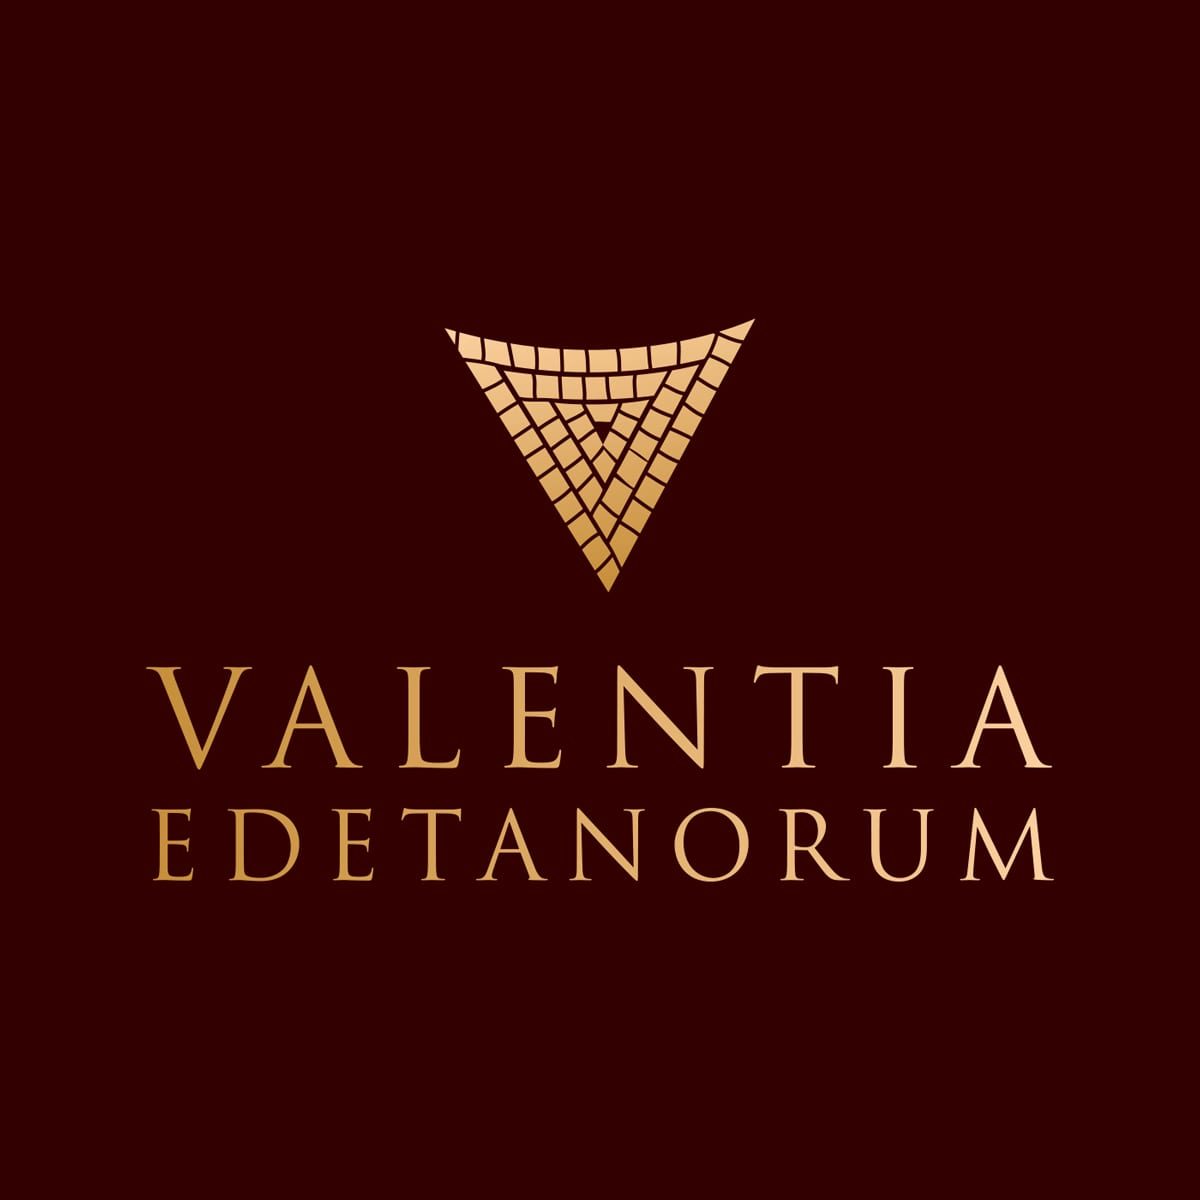 Valentia, diseño de logotipo y botella de vino con caja